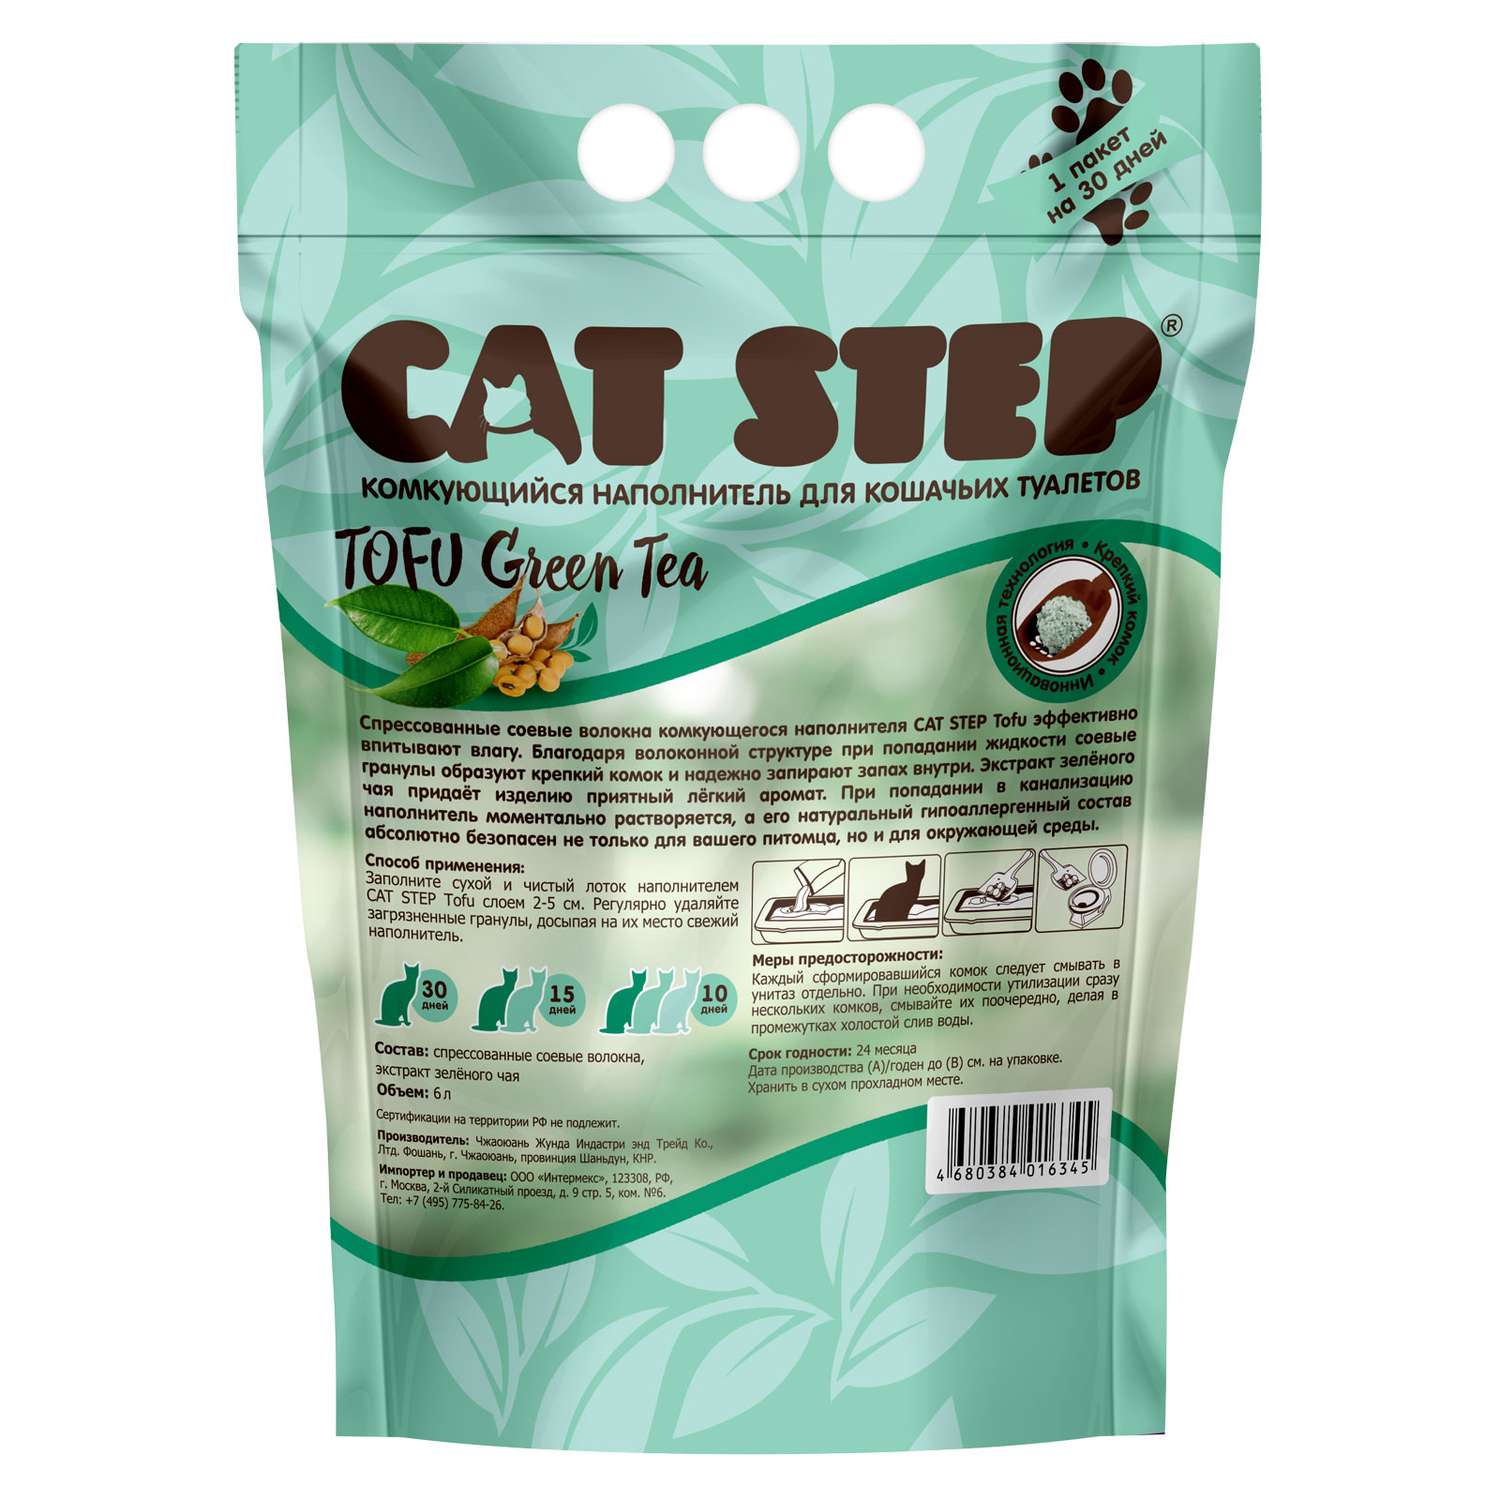 Наполнитель для кошек Cat Step Tofu Green Tea растительный комкующийся 6л - фото 2